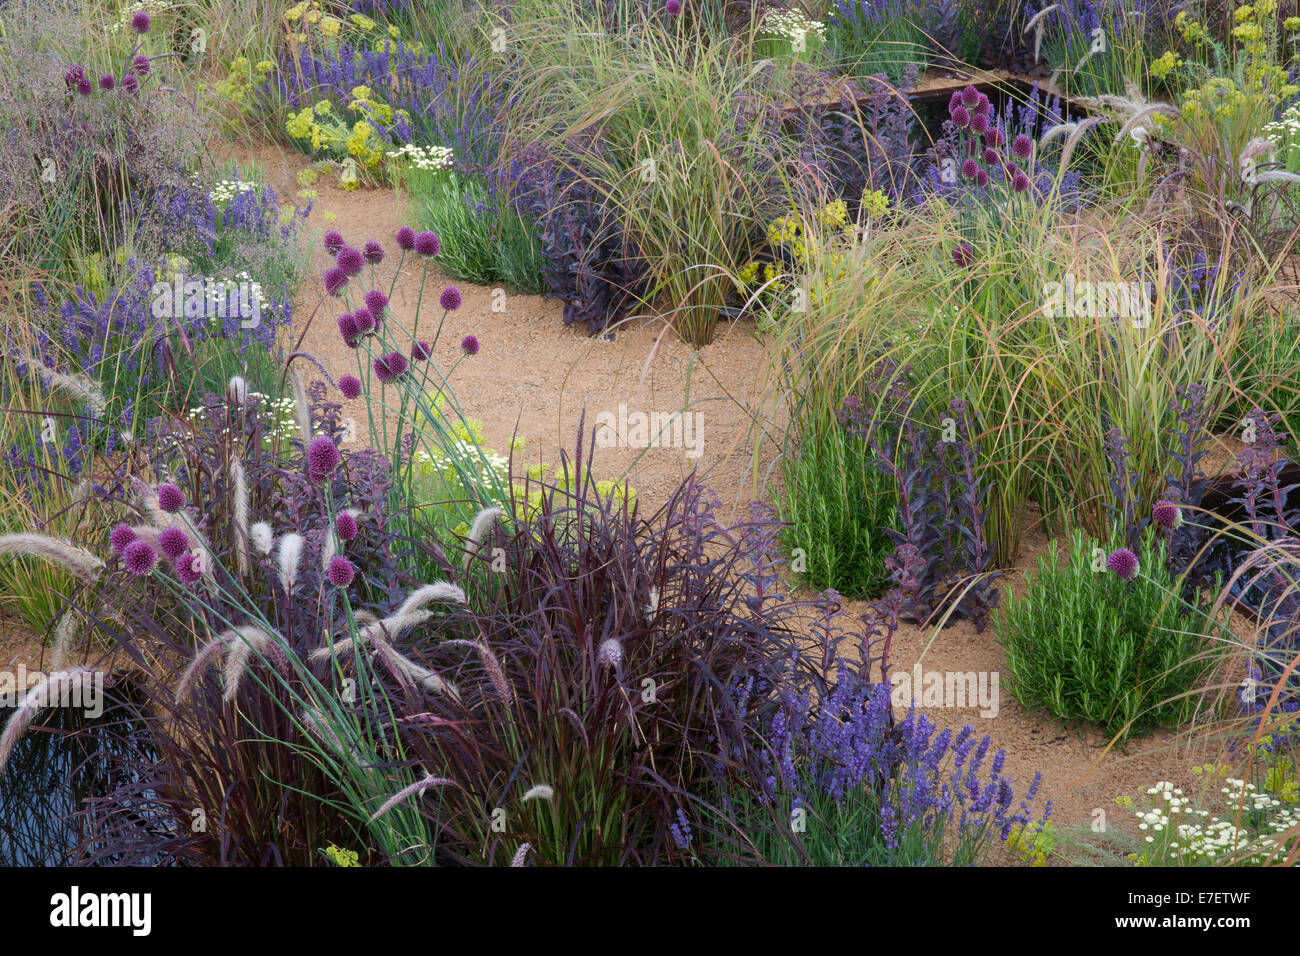 Jardin anglais moderne en gravier avec plantation d'herbes ornementales Alliums lavande plantes en croissance fleurs lits jardin frontière été Angleterre GB ROYAUME-UNI Banque D'Images